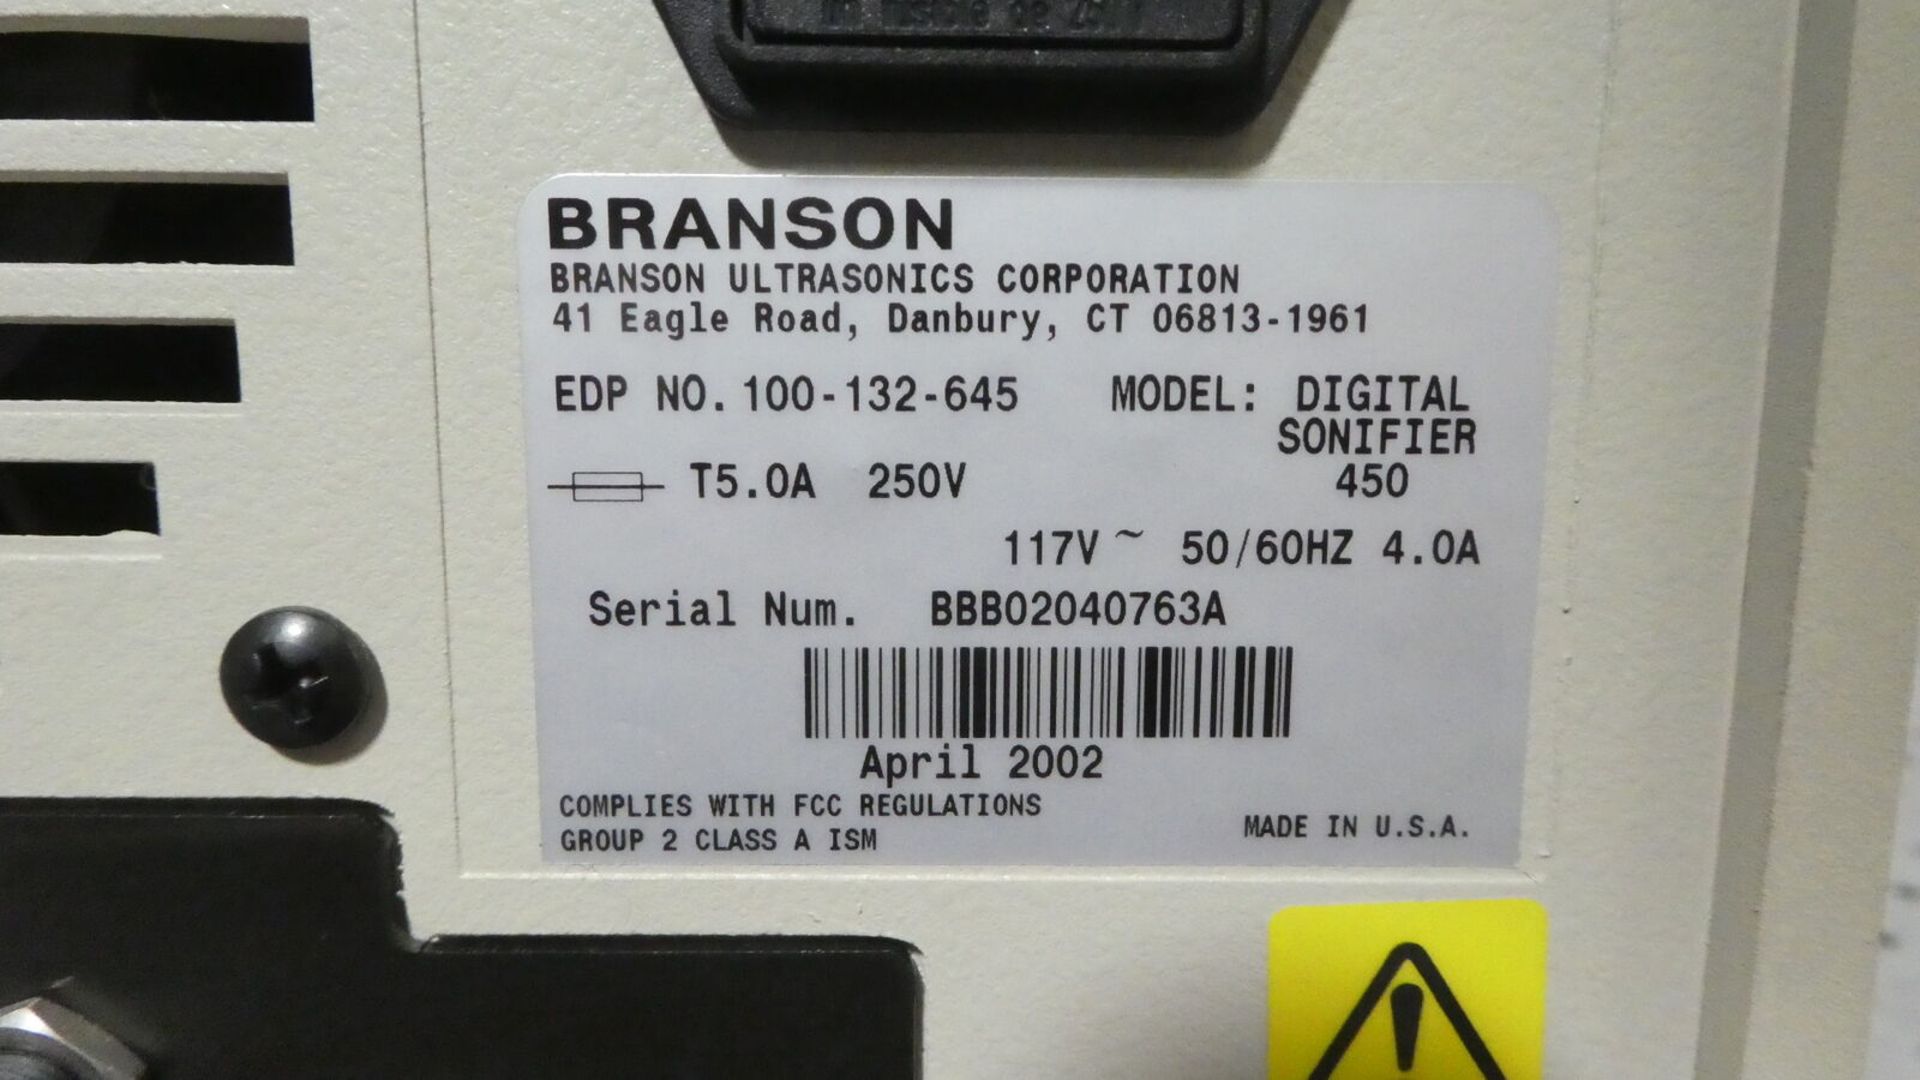 Branson Ultrasonics Digital Sonifier Model 450 - Image 5 of 6